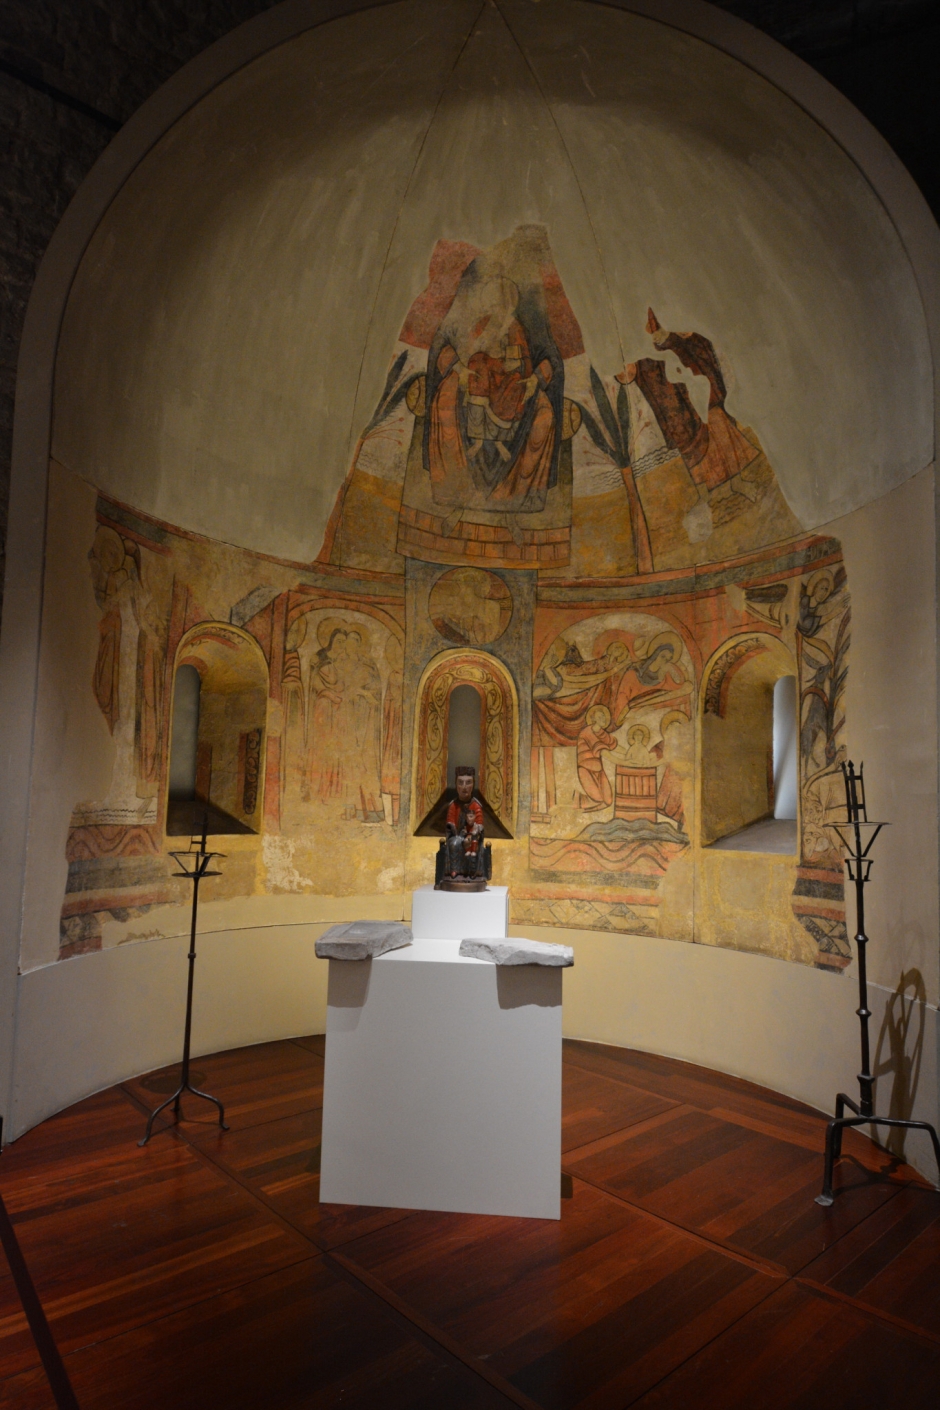 Les pintures romàniques de l'àbsis